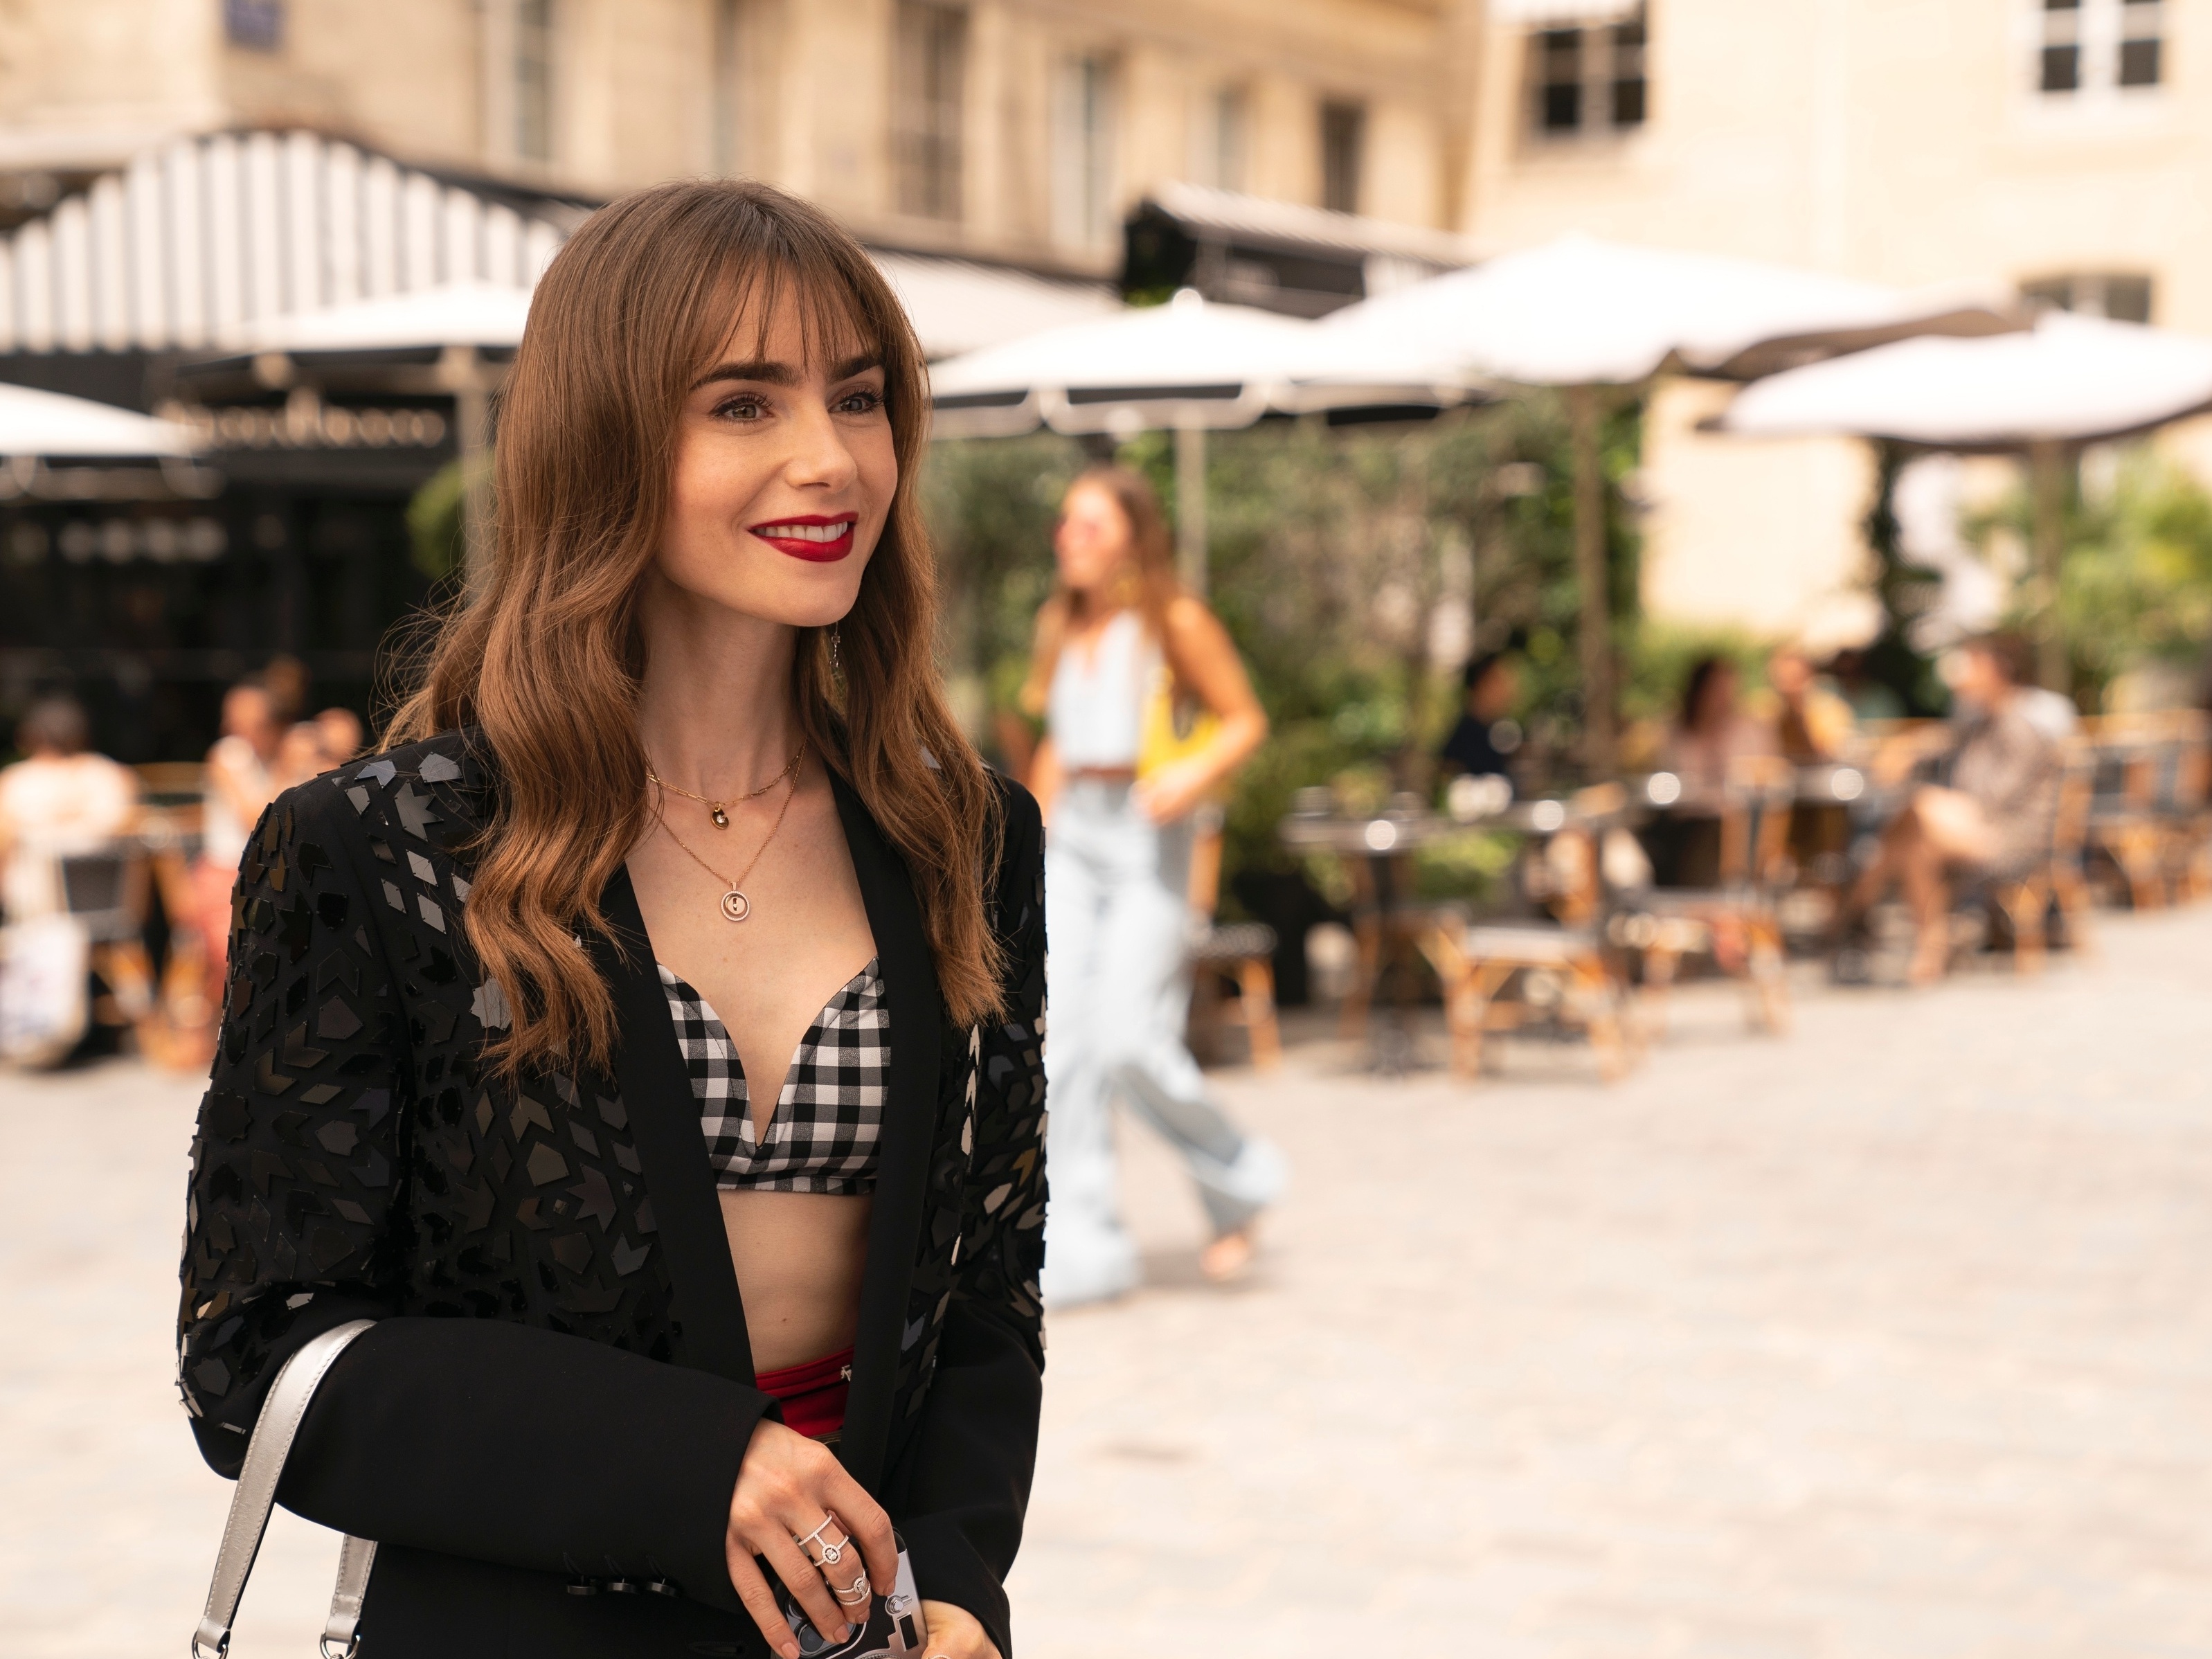 Emily em Paris está mais fashionista que nunca. Veja curiosidades da série  - 21/12/2022 - UOL Nossa